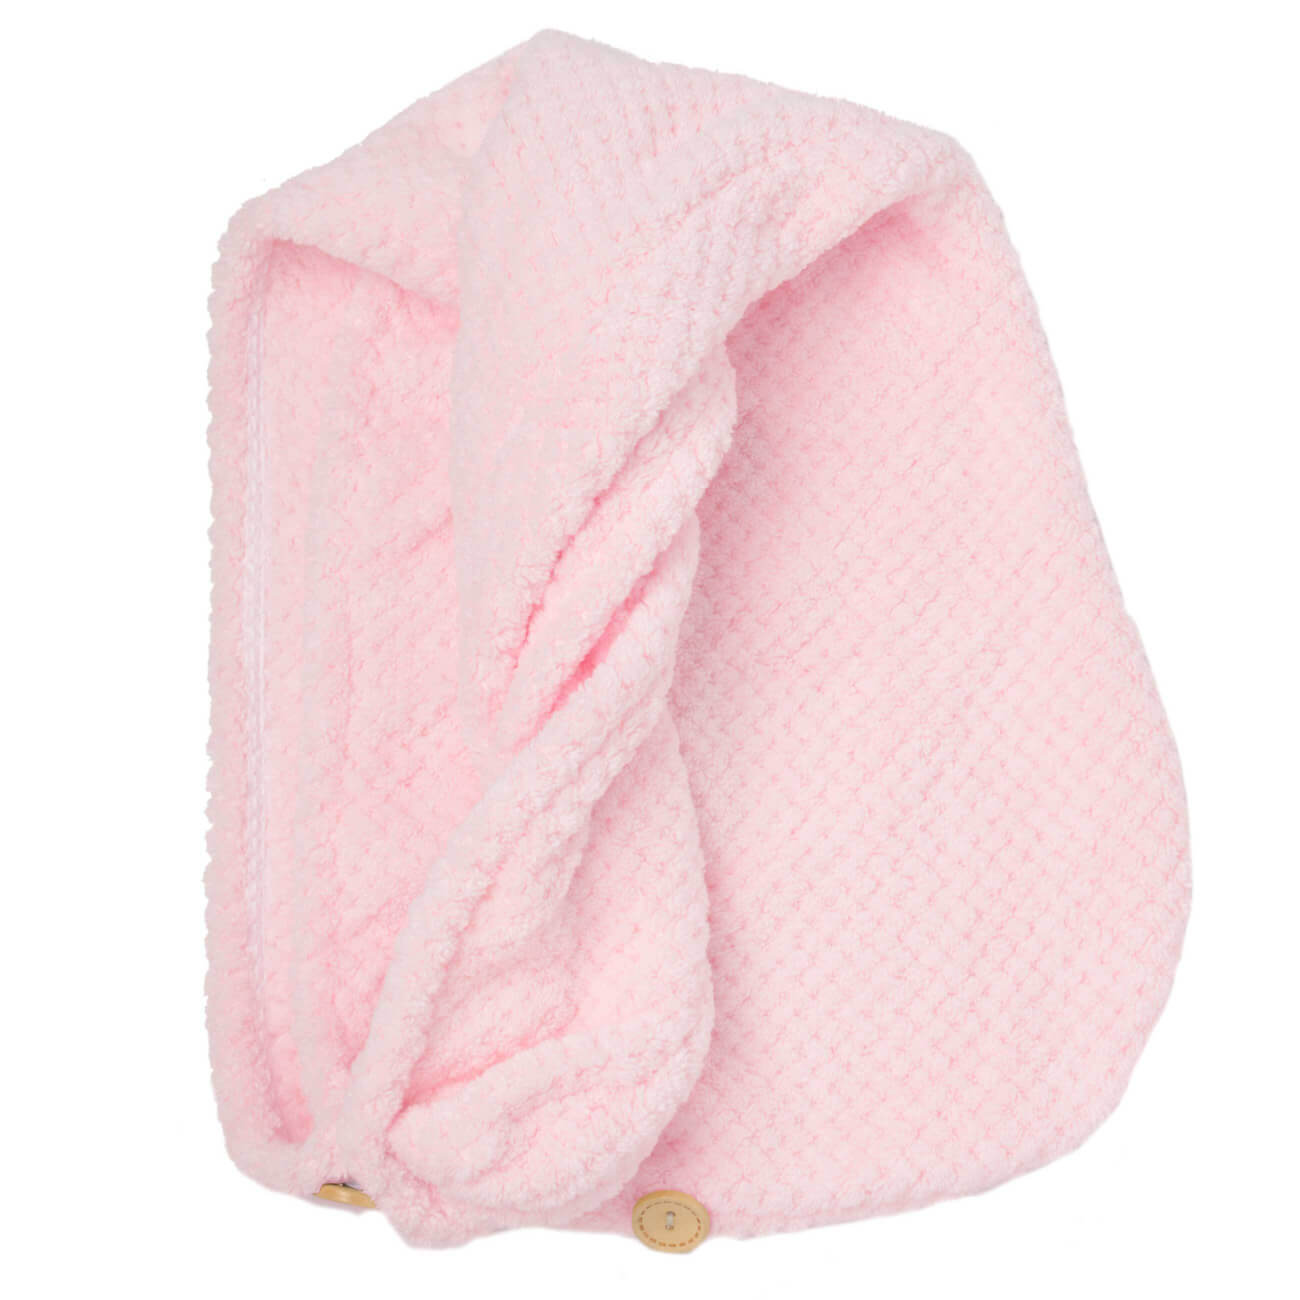 Полотенце-тюрбан для волос, 62х24 см, микроволокно, розовое, Fiber spa полотенце тюрбан для волос 62х24 см микроволокно молочное fiber spa